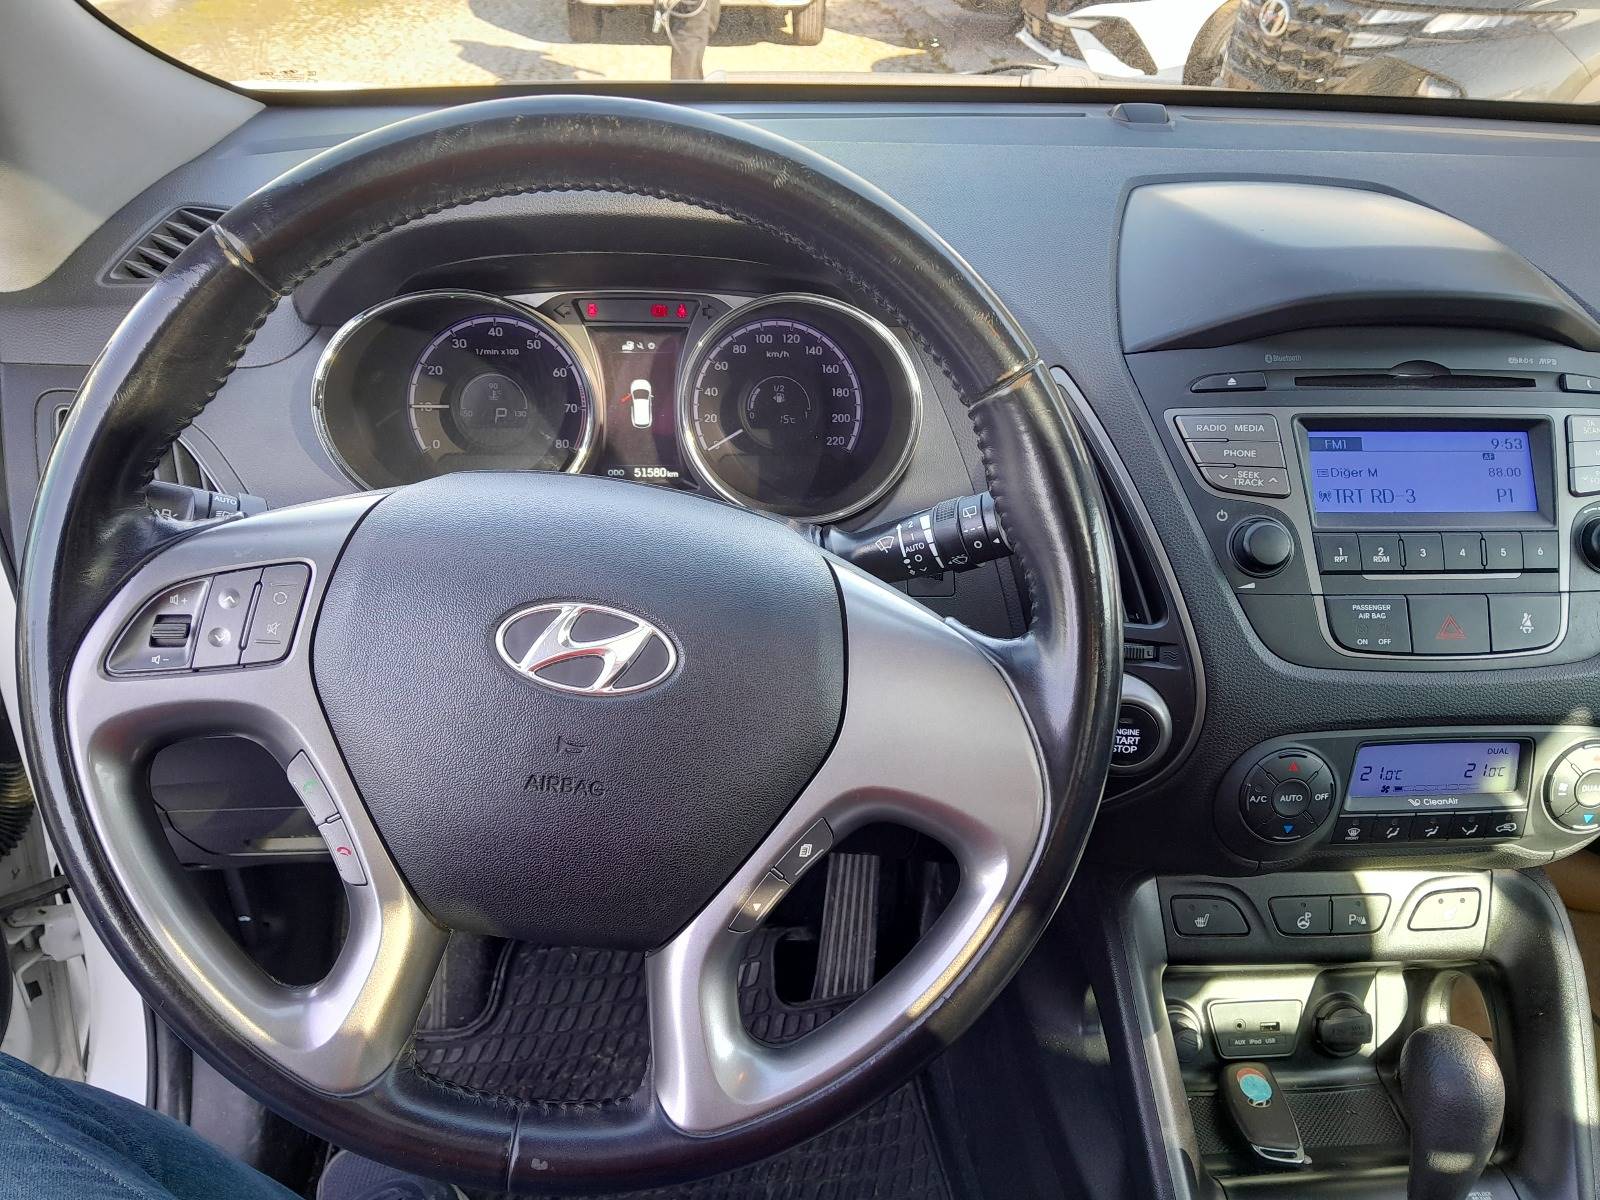 2014 Benzin Otomatik Hyundai ix35 Beyaz Yükseliş Nakil Araçları Turizm Ticaret ve Sanayi Anonim Şirketi